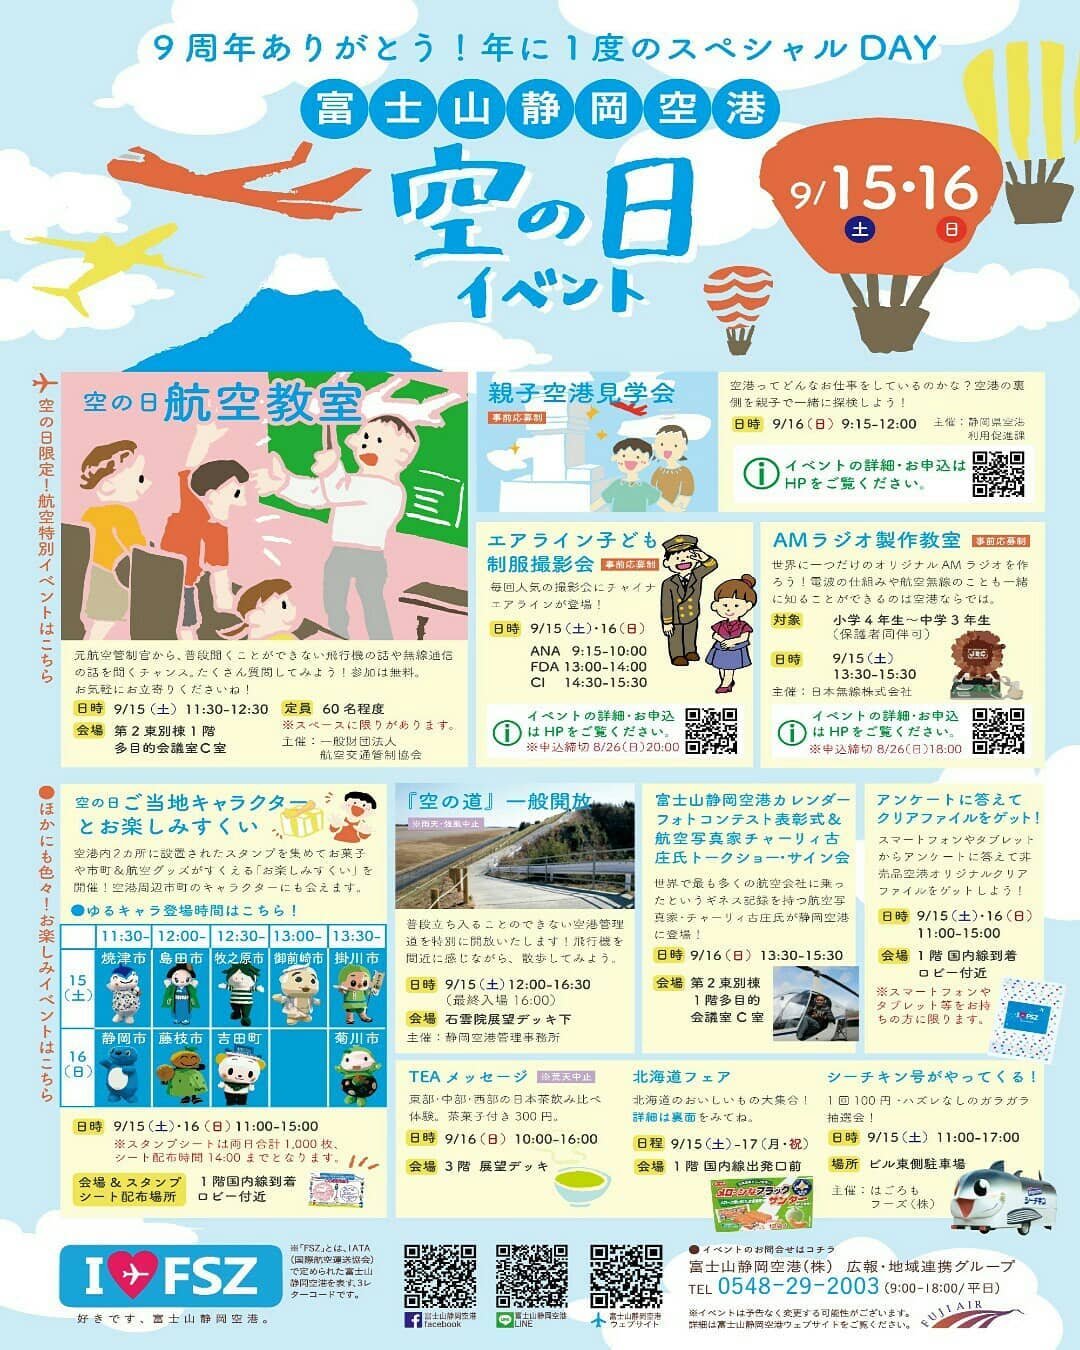 富士山静岡空港で 年に一度の #空の日イベント が開催されるようです 9月15日(土)16日(日)